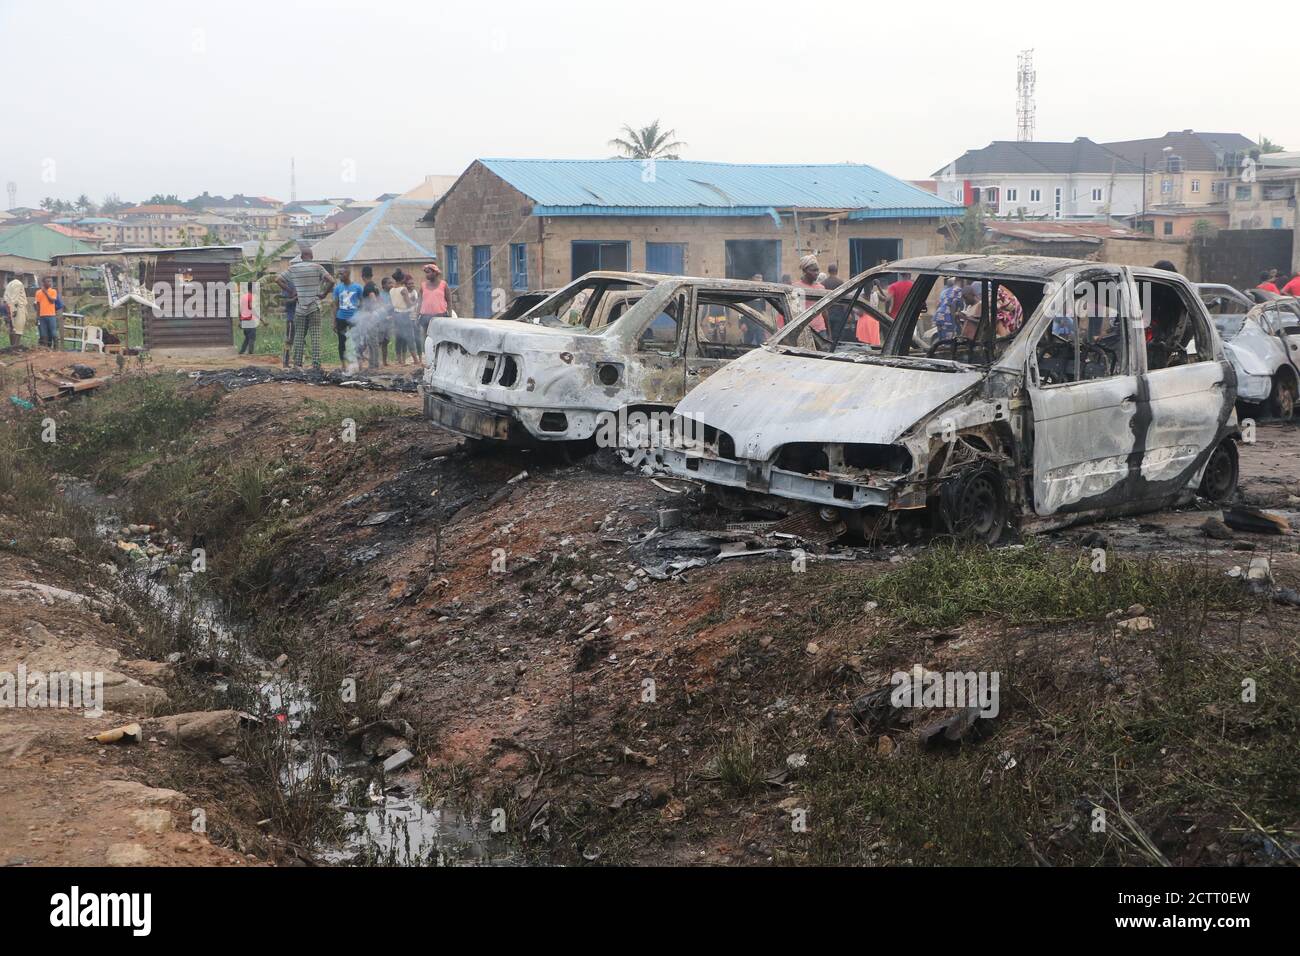 Lagos, Nigéria. 24 septembre 2020. Des voitures brûlées sont vues sur le site d'une explosion d'un pétrolier à gaz dans la région d'Ifako-Ijaiye à Lagos, au Nigeria, le 24 septembre 2020. Au moins 16 personnes ont été blessées après l'explosion d'un pétrolier à gaz dans la région d'Ifako-Ijaiye à Lagos, le centre économique du Nigeria, a déclaré un responsable des secours jeudi. Credit: Emmanuel/Xinhua/Alamy Live News Banque D'Images